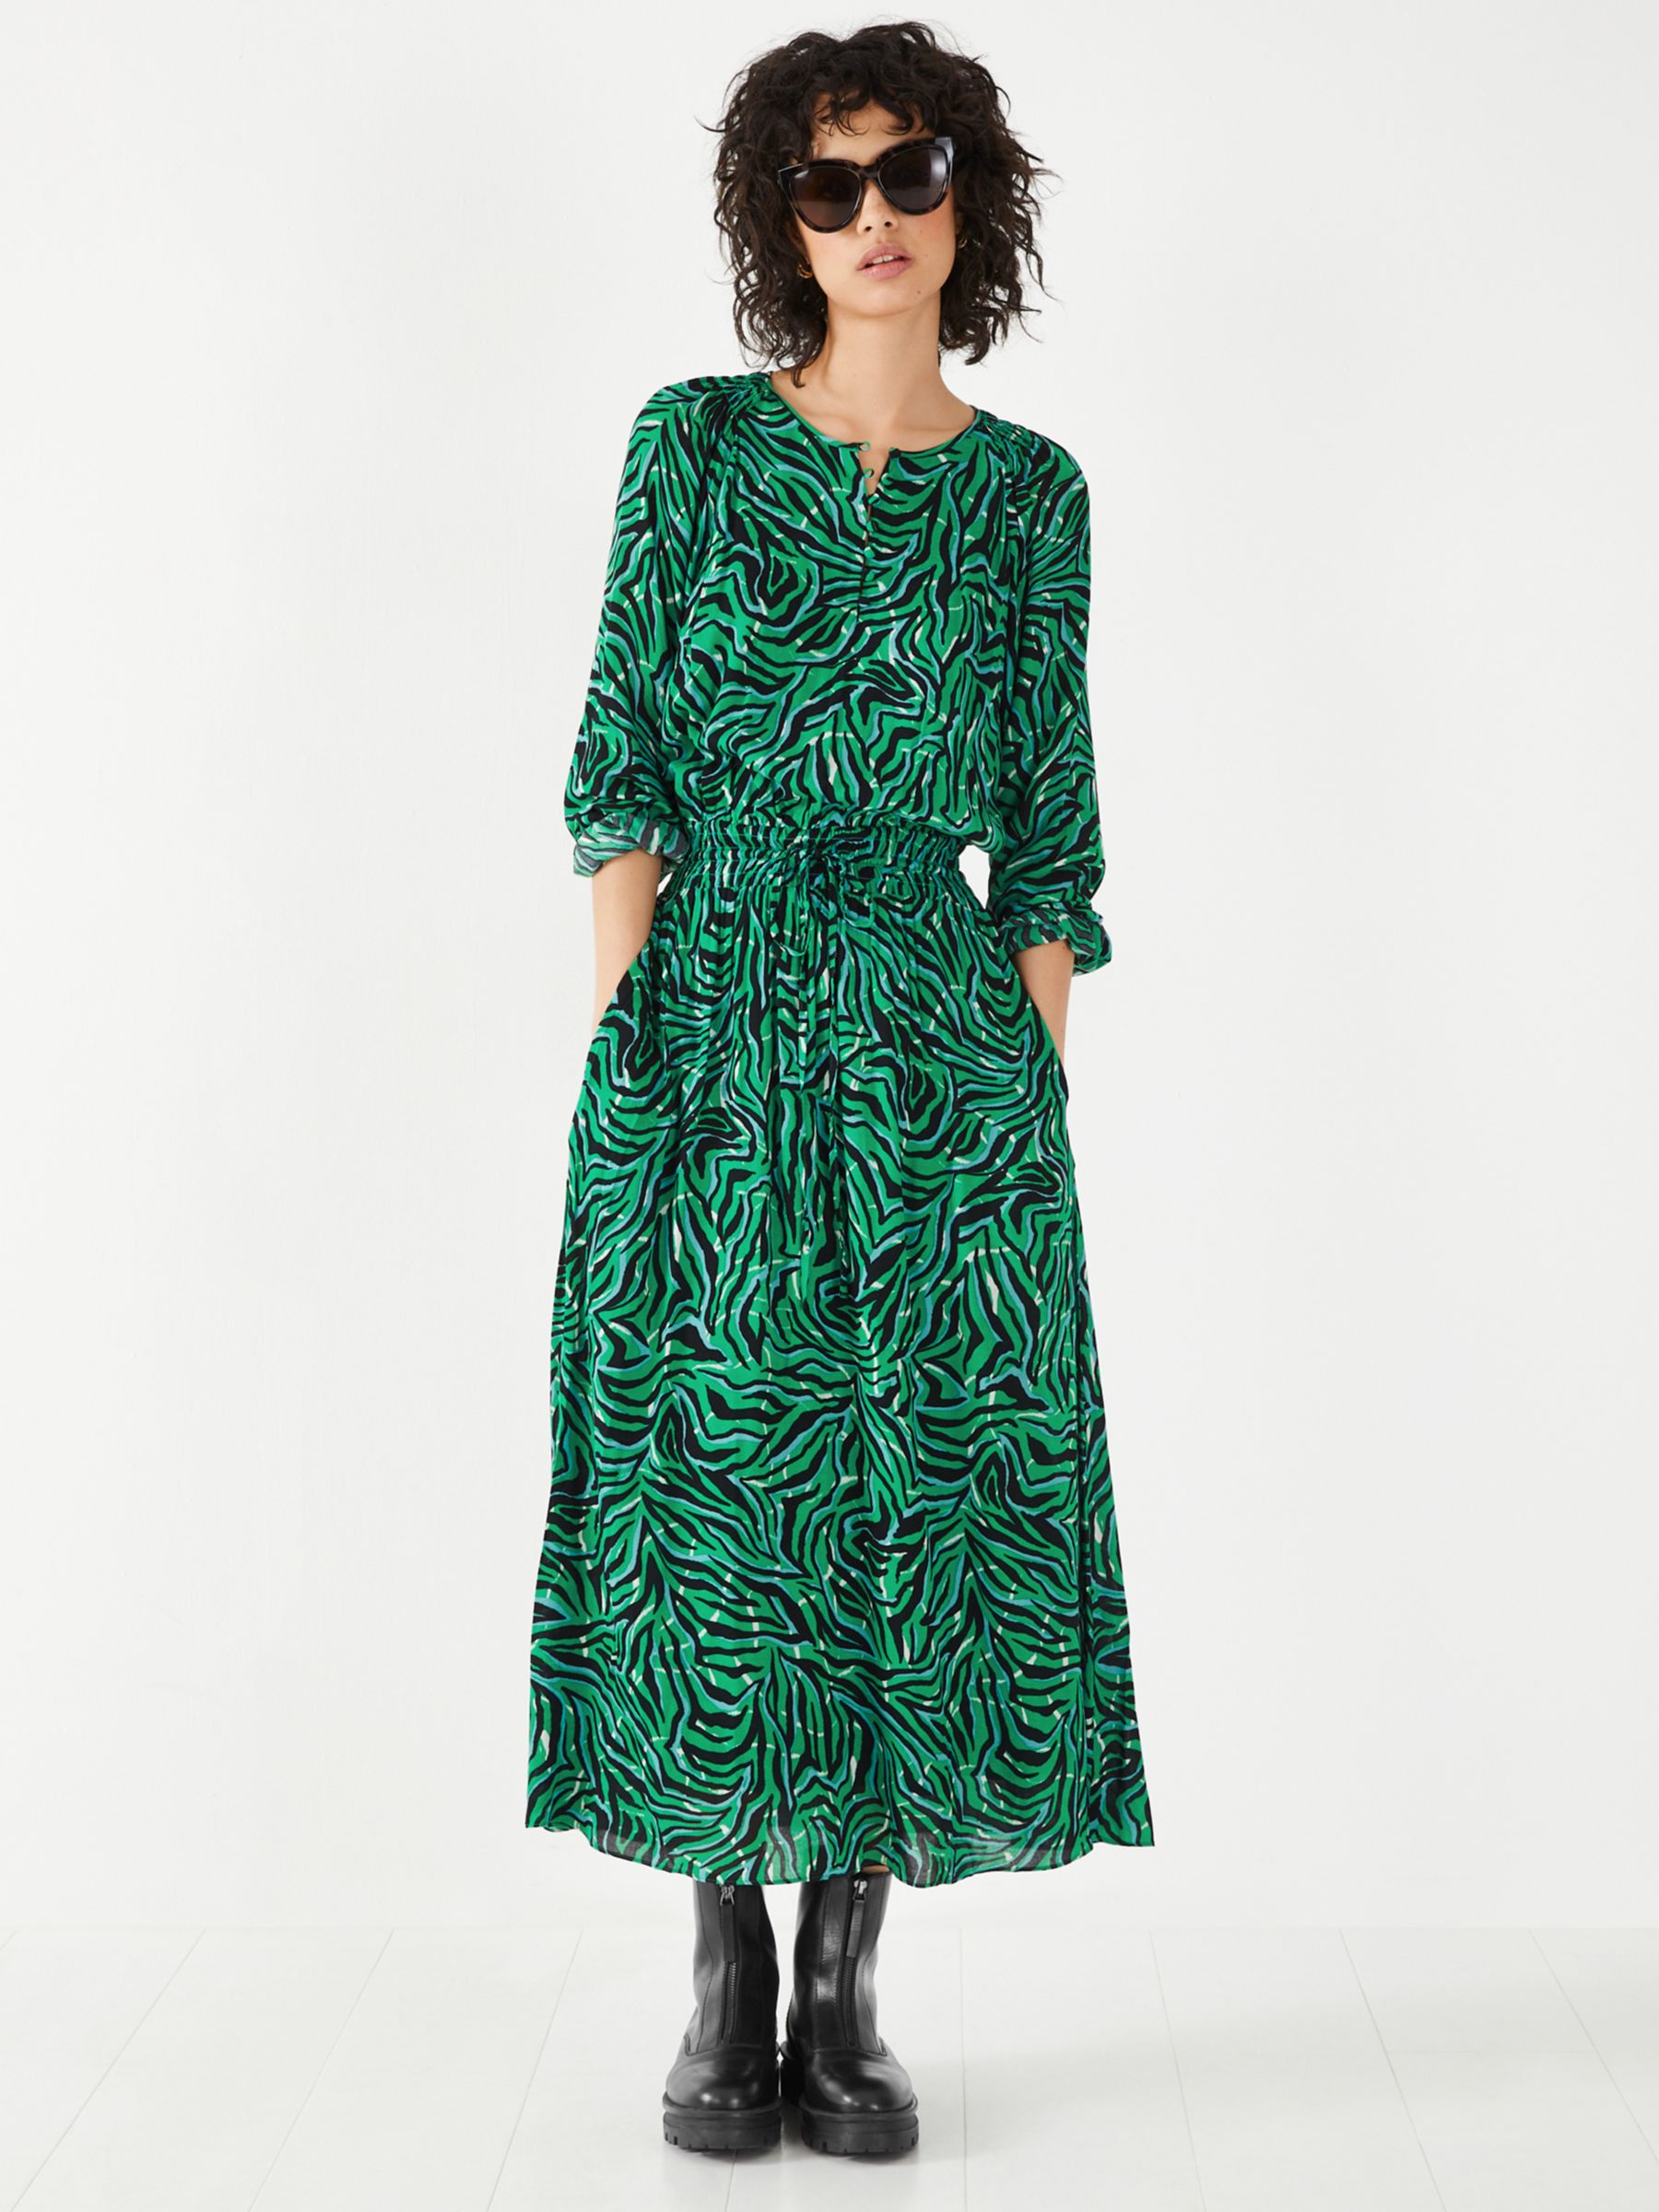 HUSH Madelyn Animal Print Midi Dress, Green, 16